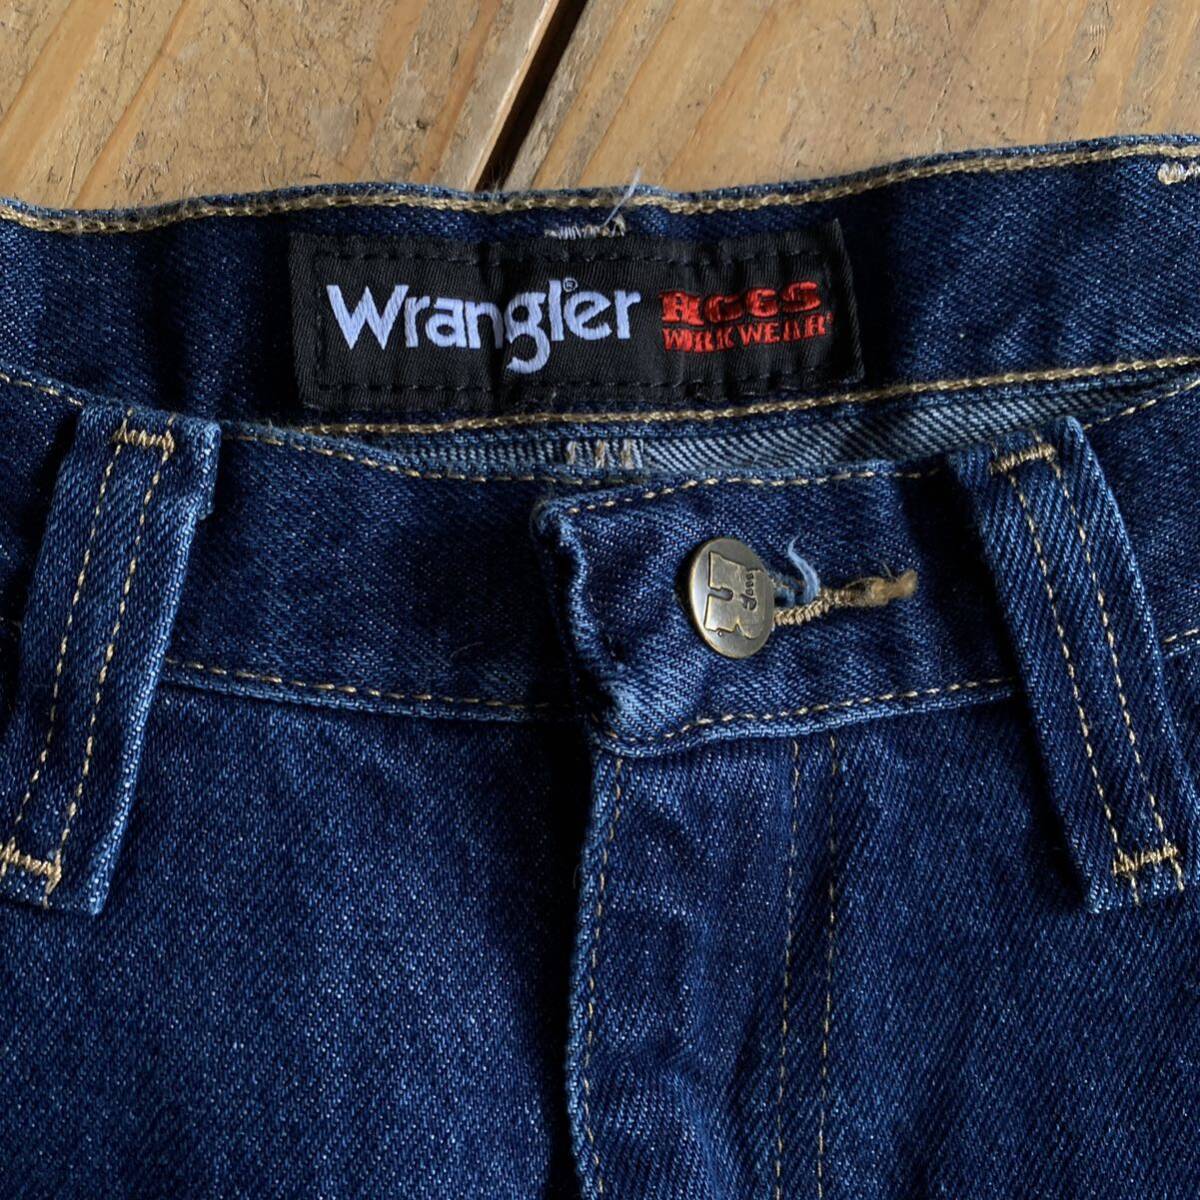  новый товар  Wrangler  Wranger ... брюки    мужской  34x36 размер    Denim   ... RIGGS  DEAD  запас    брюки    бирка есть  ... неиспользованный товар   P1307